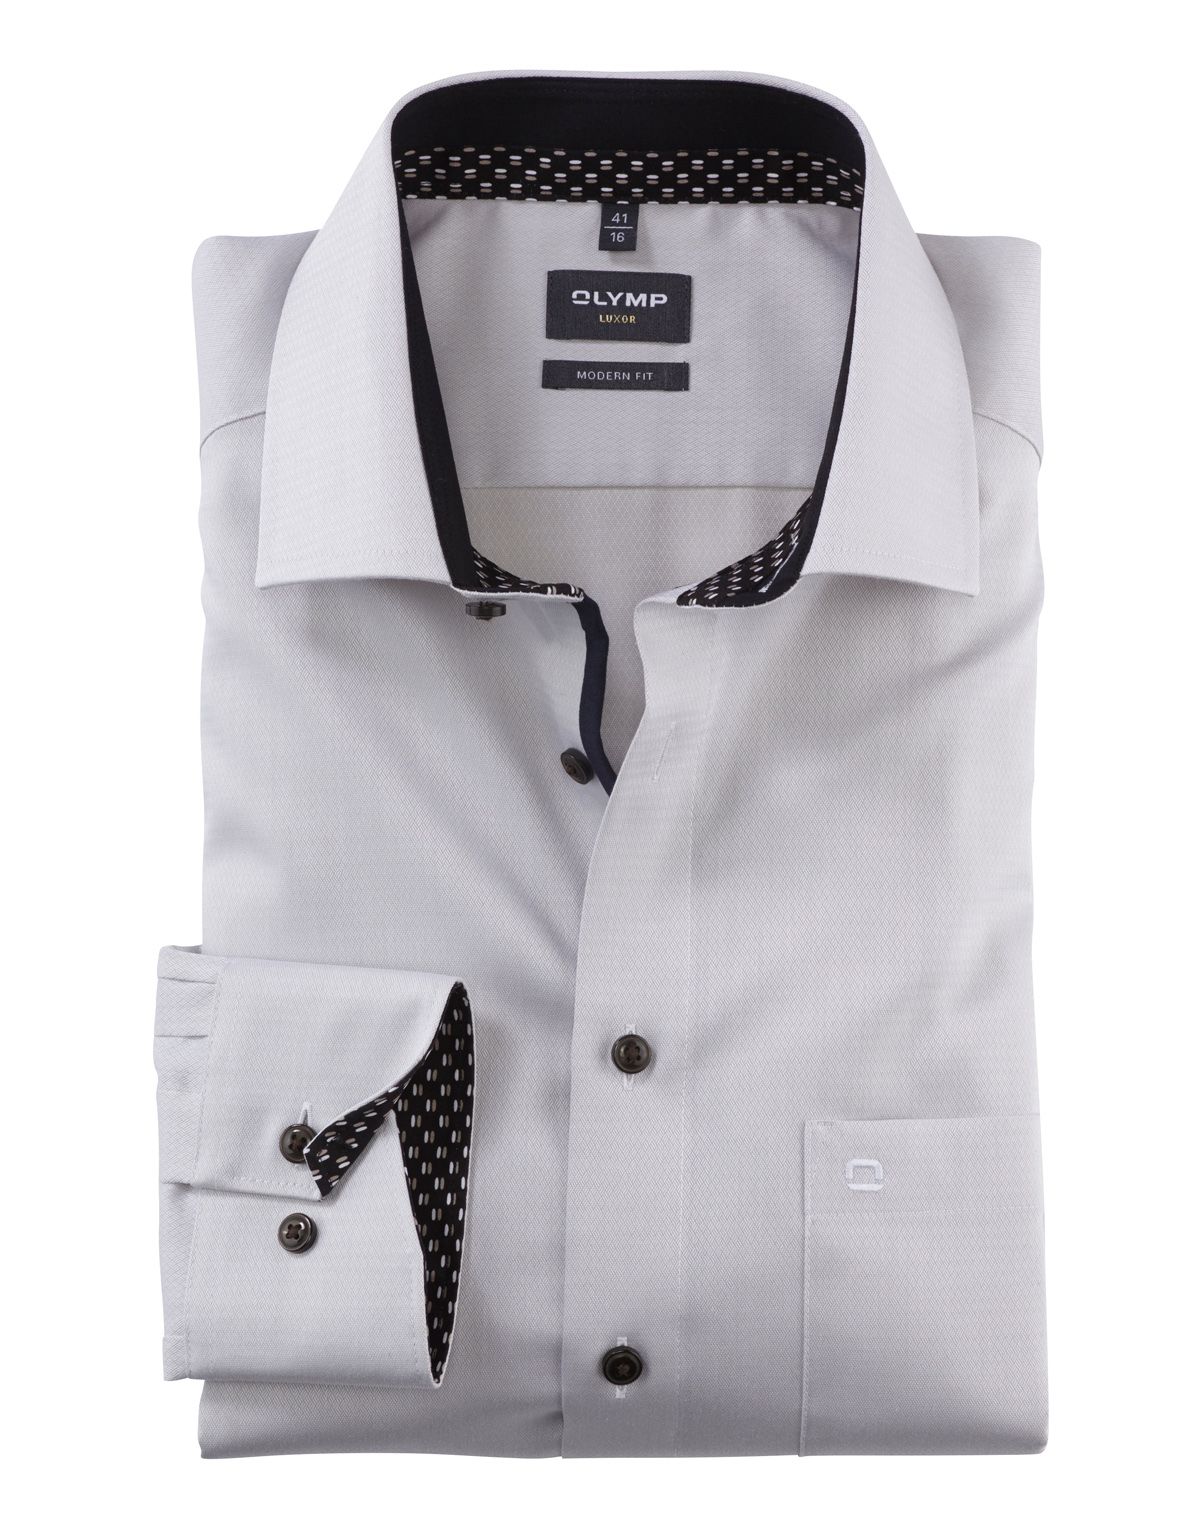 Рубашка мужская OLYMP Luxor, modern fit, фактурная ткань[БЕЖЕВЫЙ]